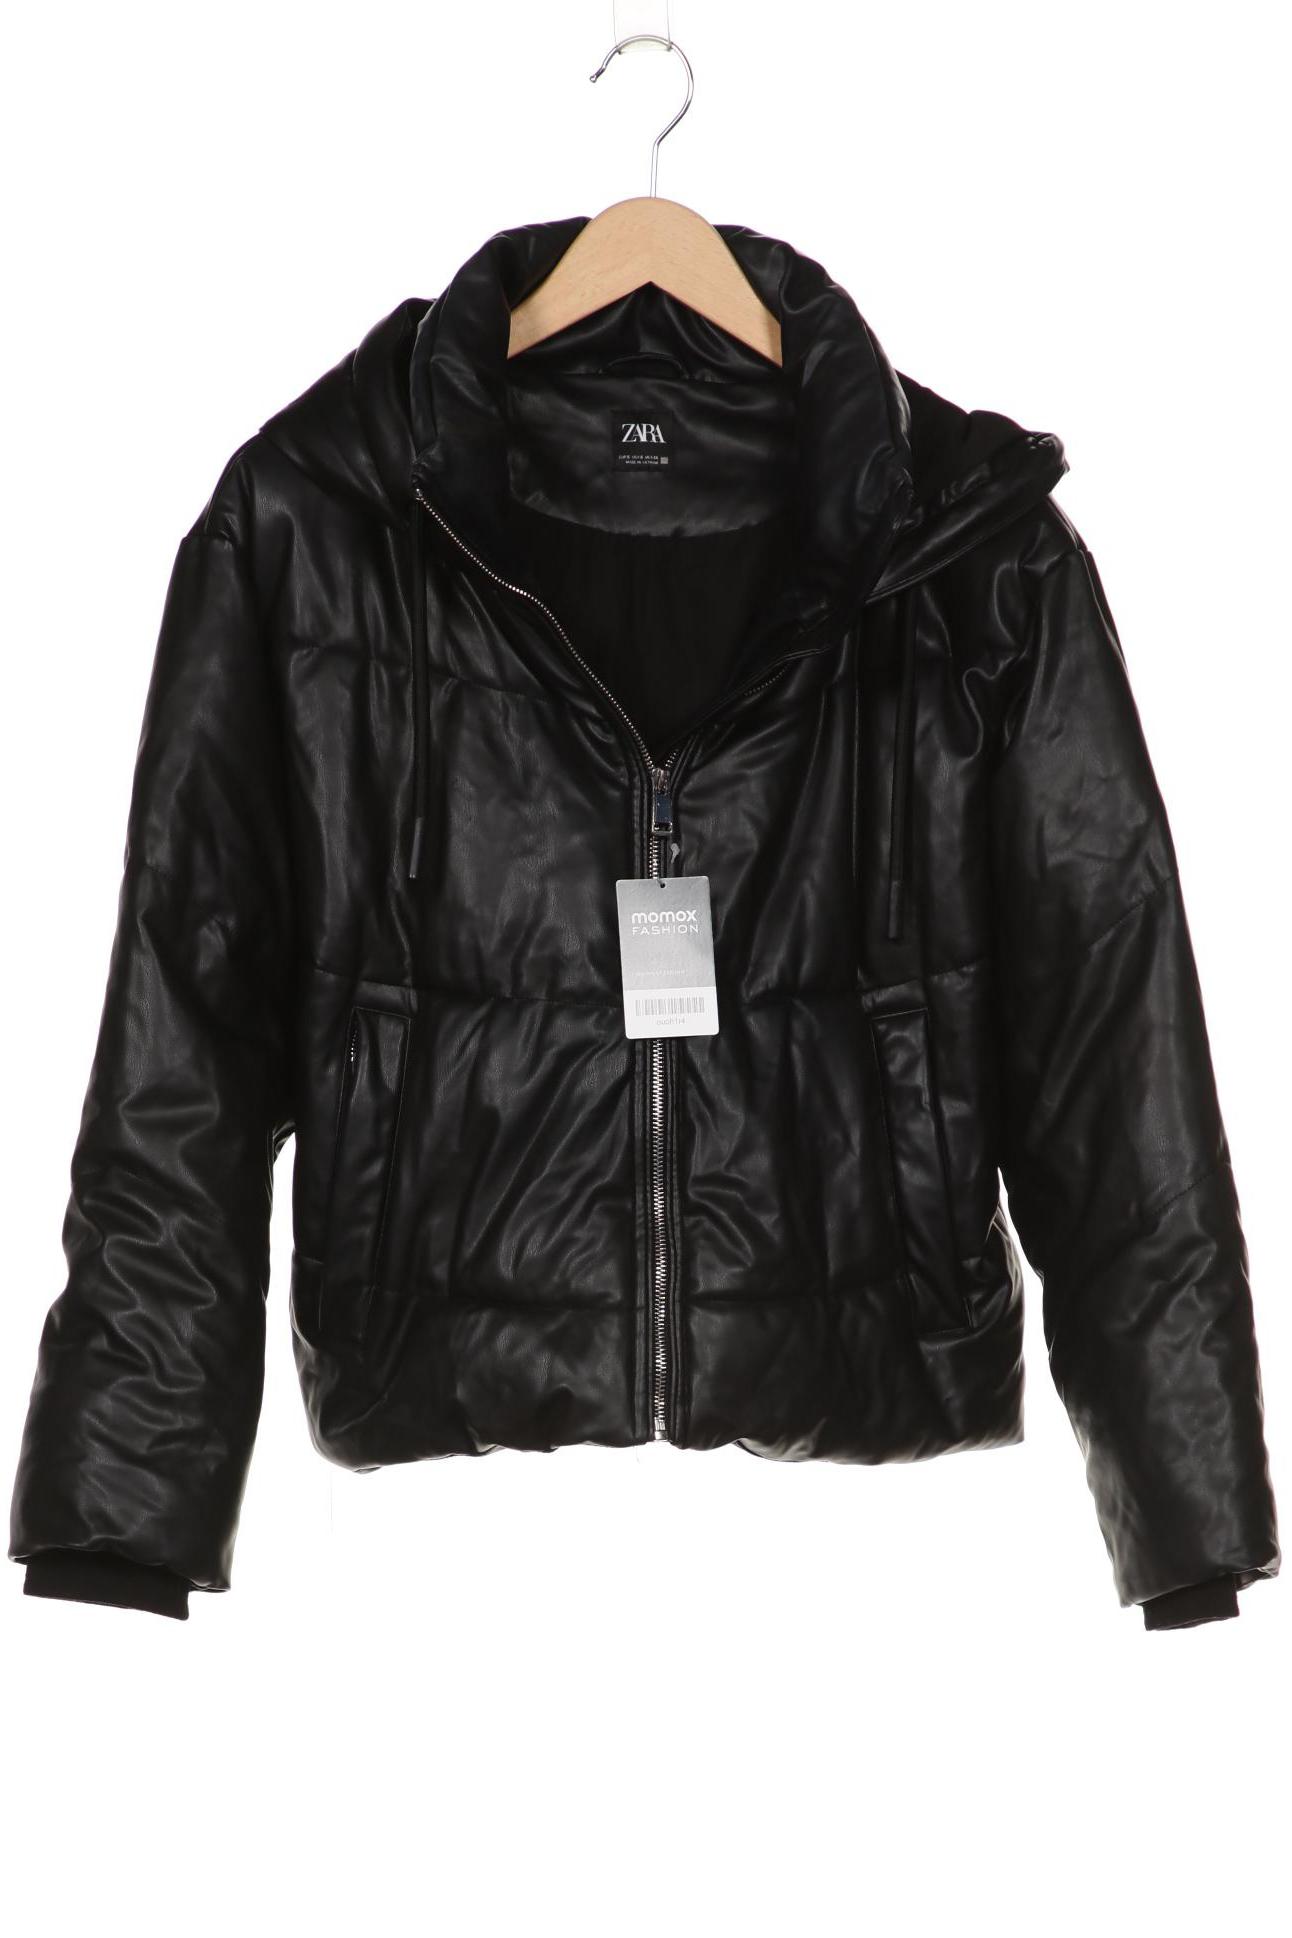 Zara Damen Jacke, schwarz, Gr. 36 von ZARA